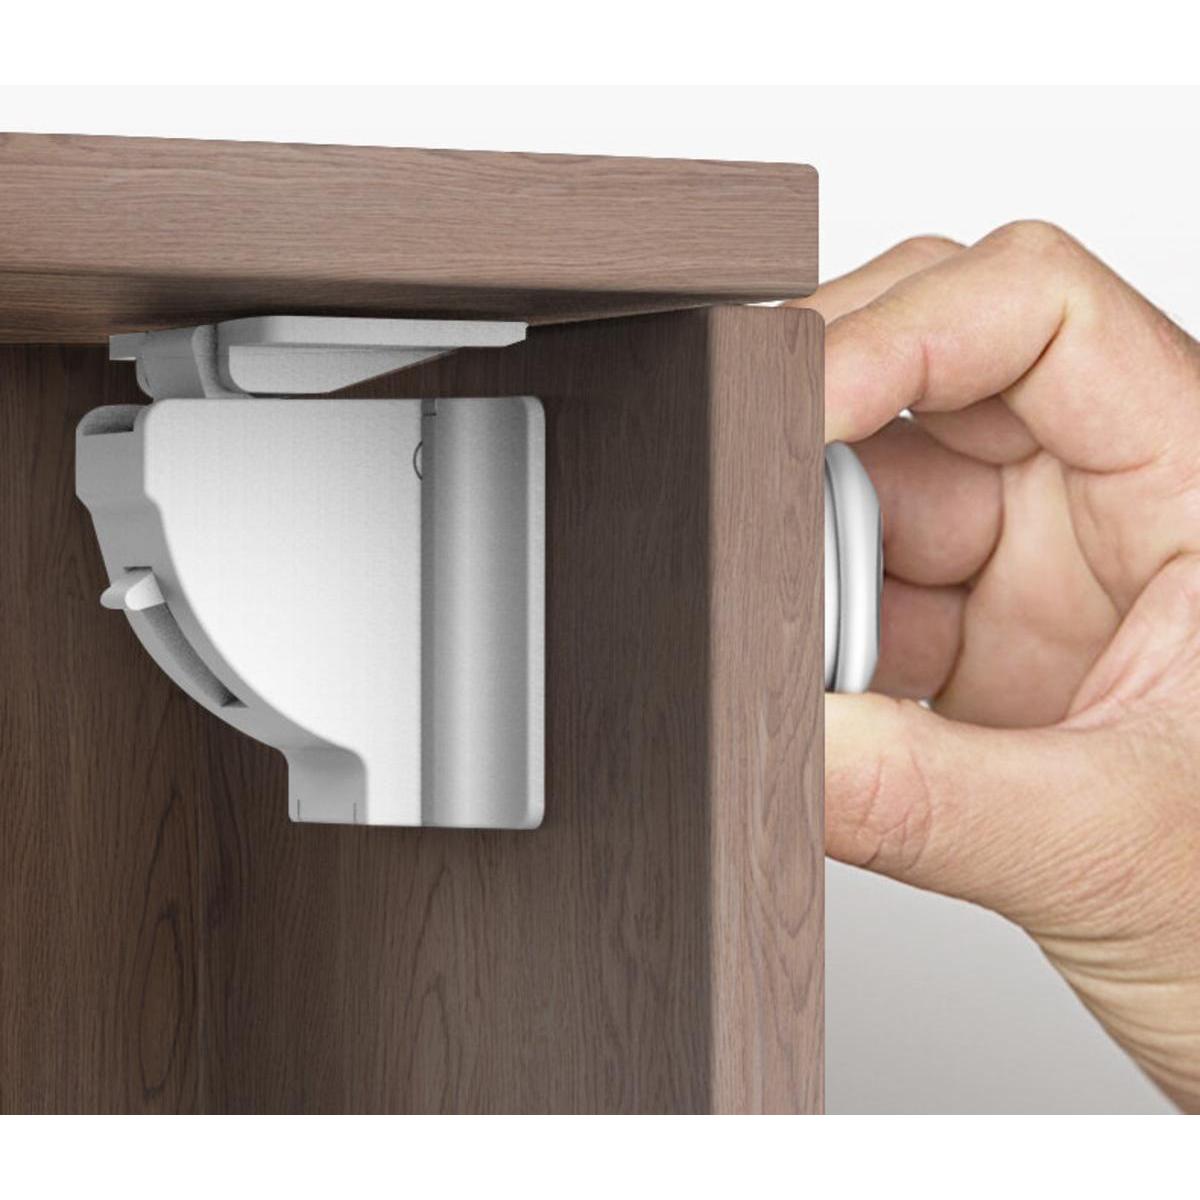 Bloque-porte invisible pour tiroir et placard + clef magnétique - 3.5 x 3.5  x 3.5 cm 